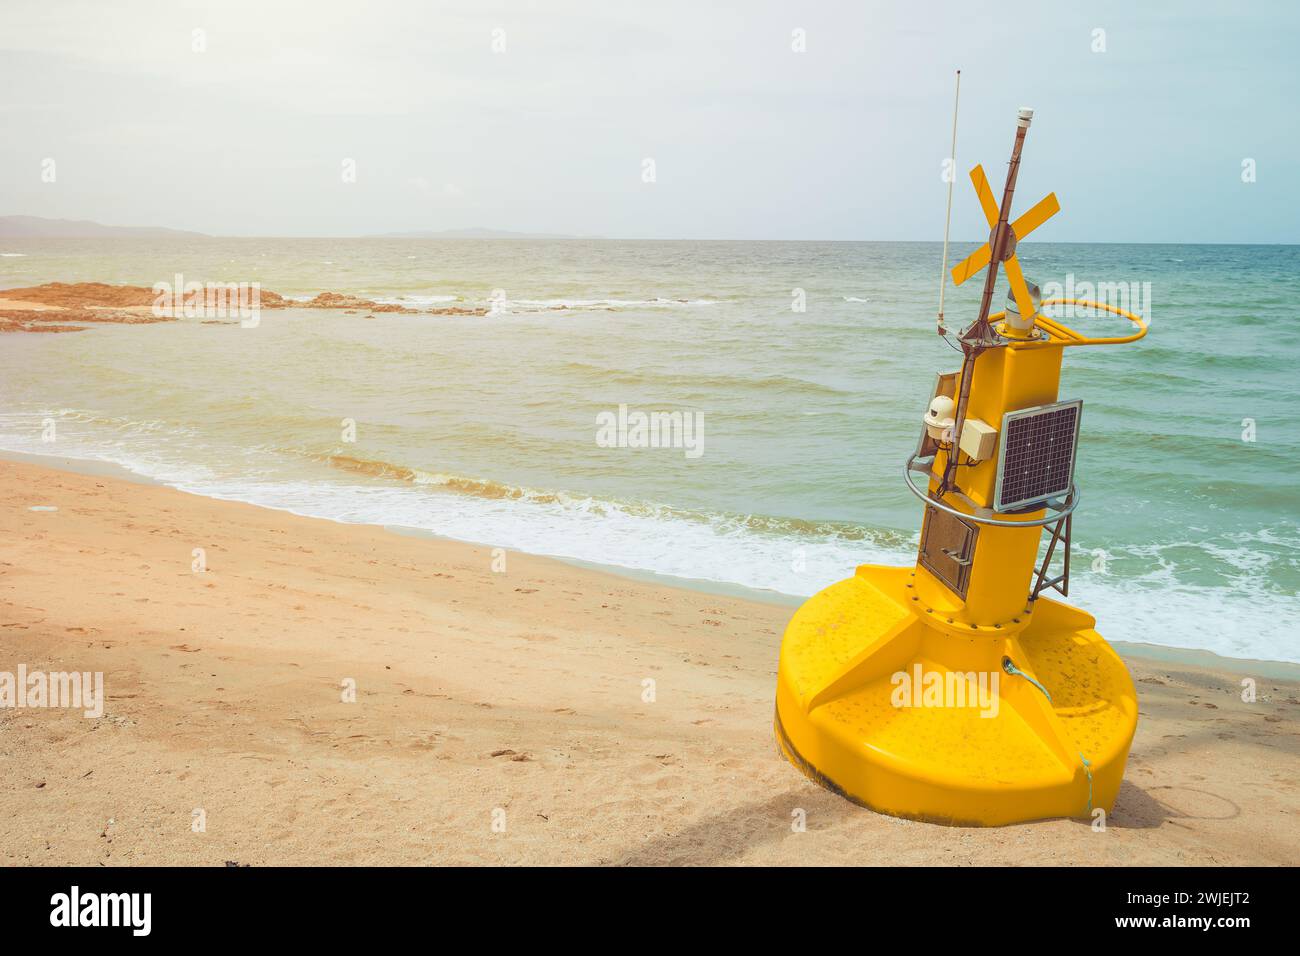 Booy con pannello solare Smart Technology Device per monitoraggio in tempo reale dati monitoraggio del mare e delle condizioni atmosferiche Foto Stock